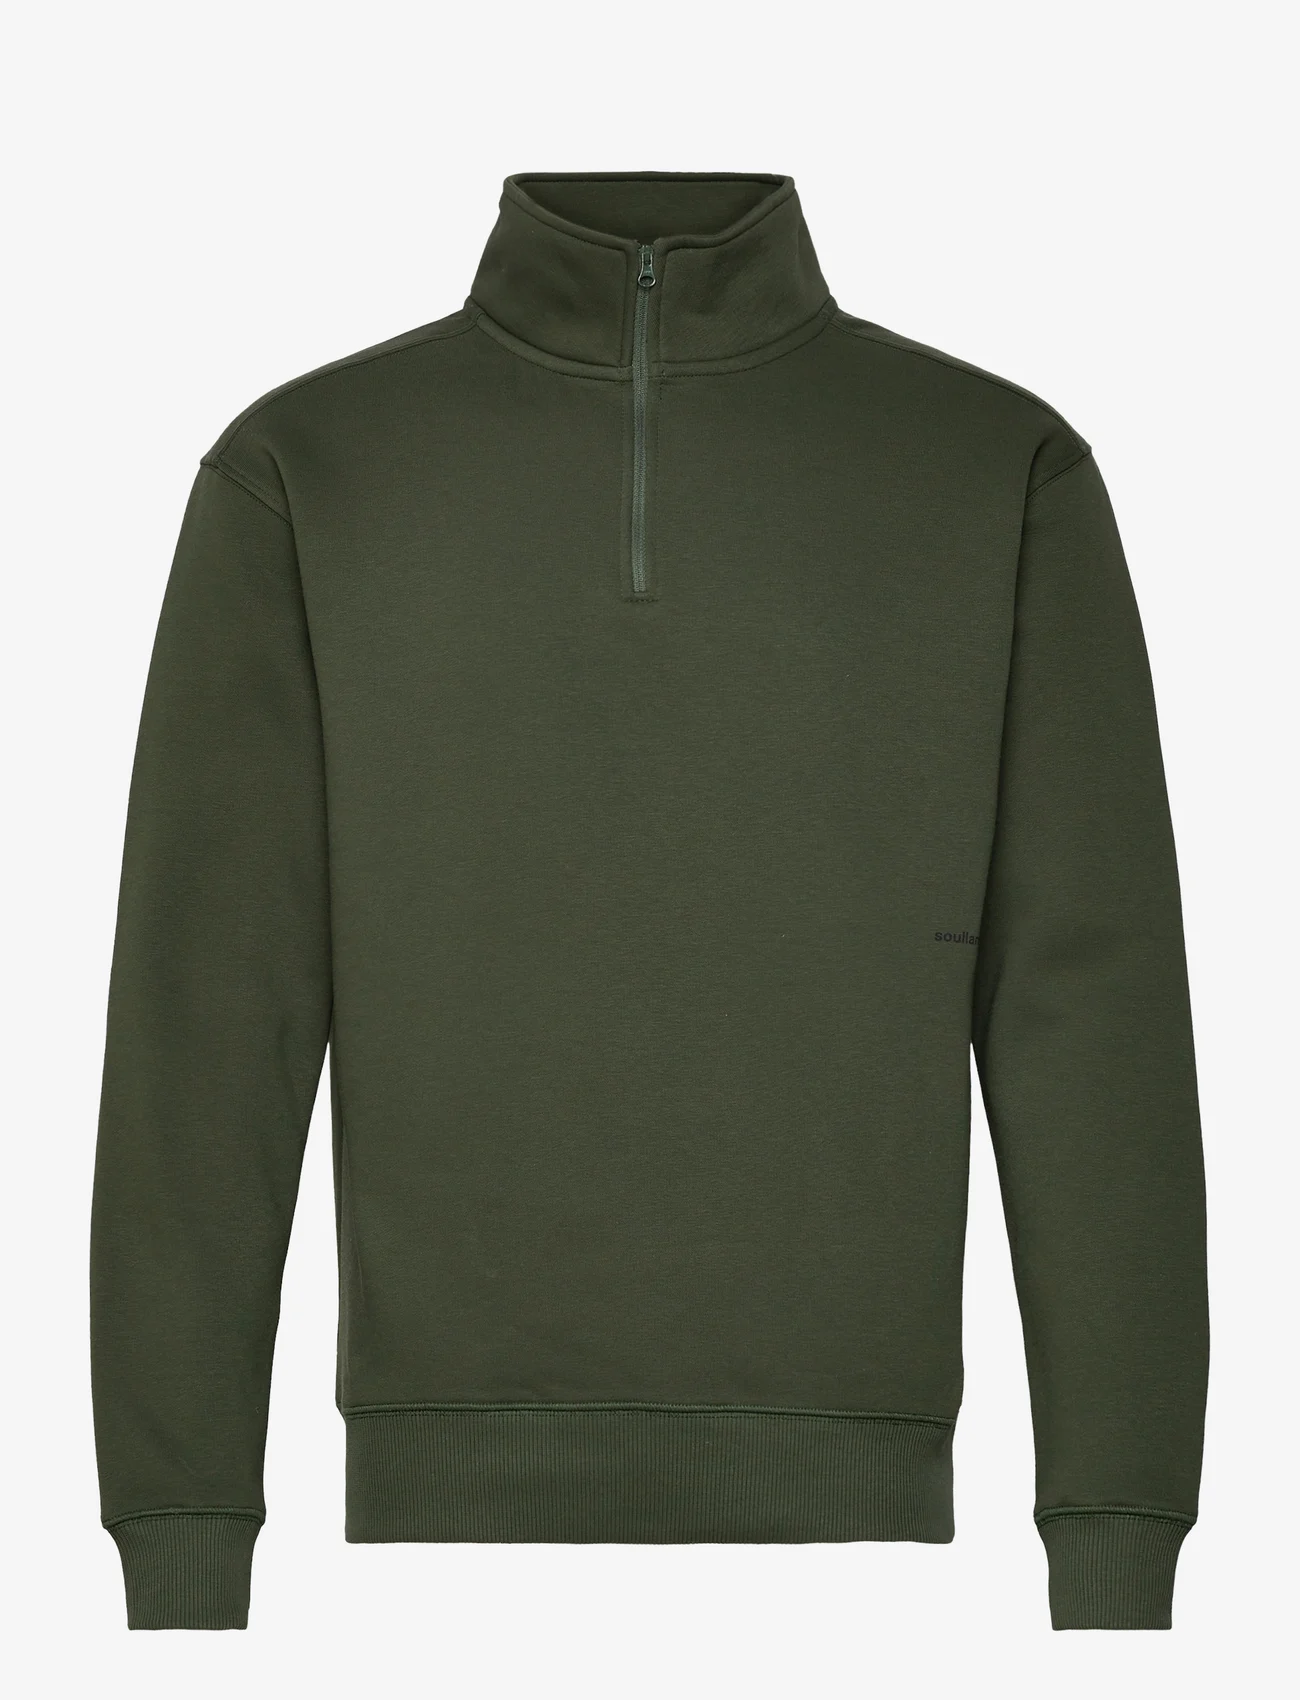 Soulland - Ken Half Zip Sweatshirt - hettegensere - green - 0